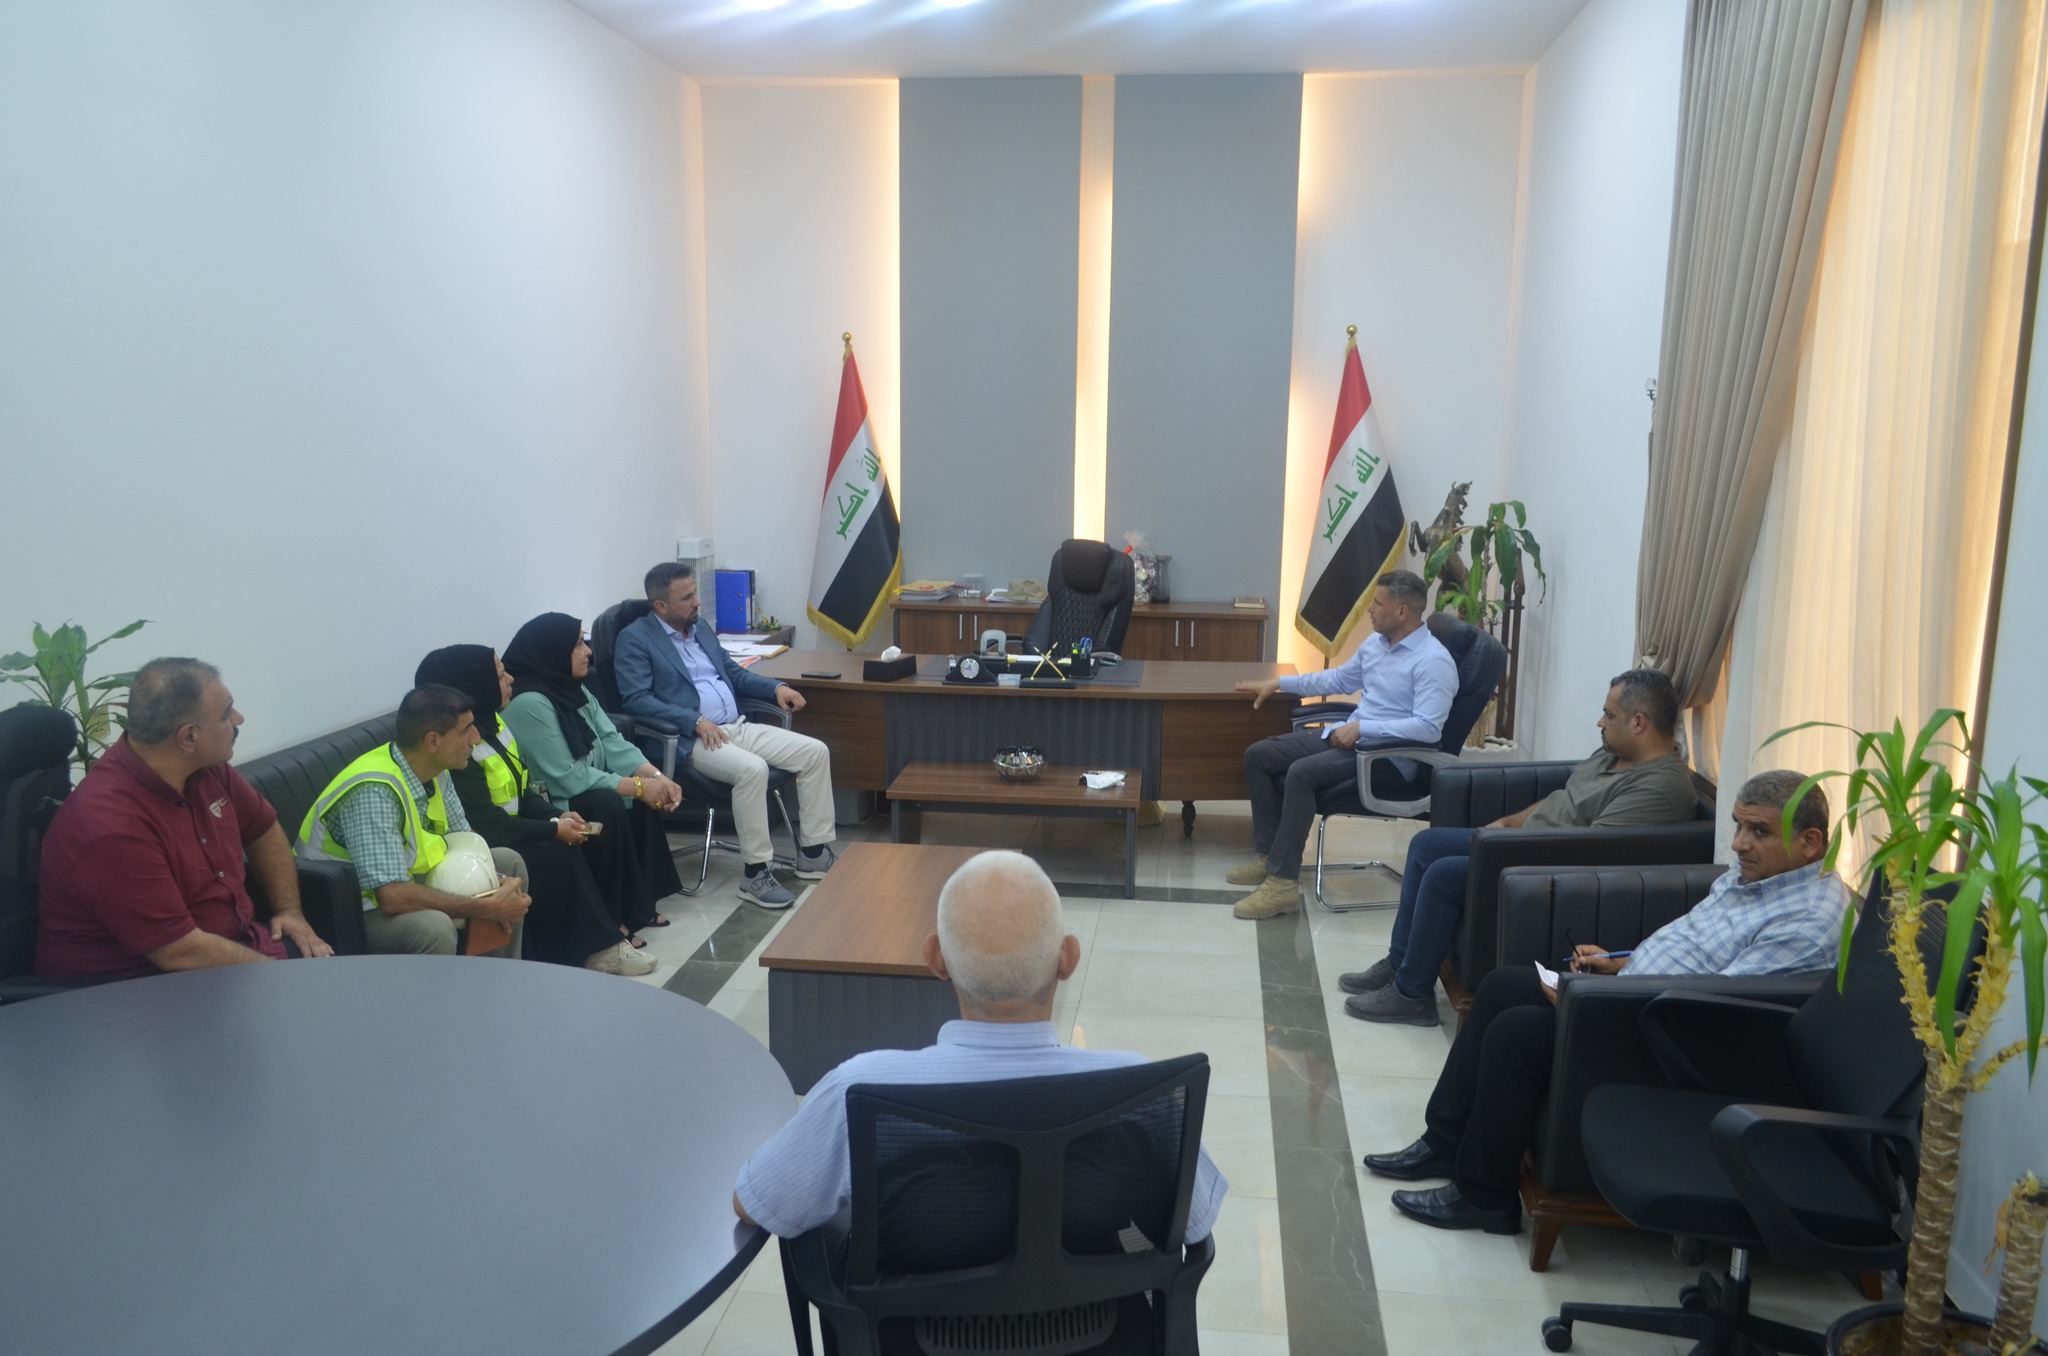 السيد المدير العام يزور مشروع تأهيل الشوارع الرئيسة والخدمية لدور الموظفين في مصفى الدورة ببغداد